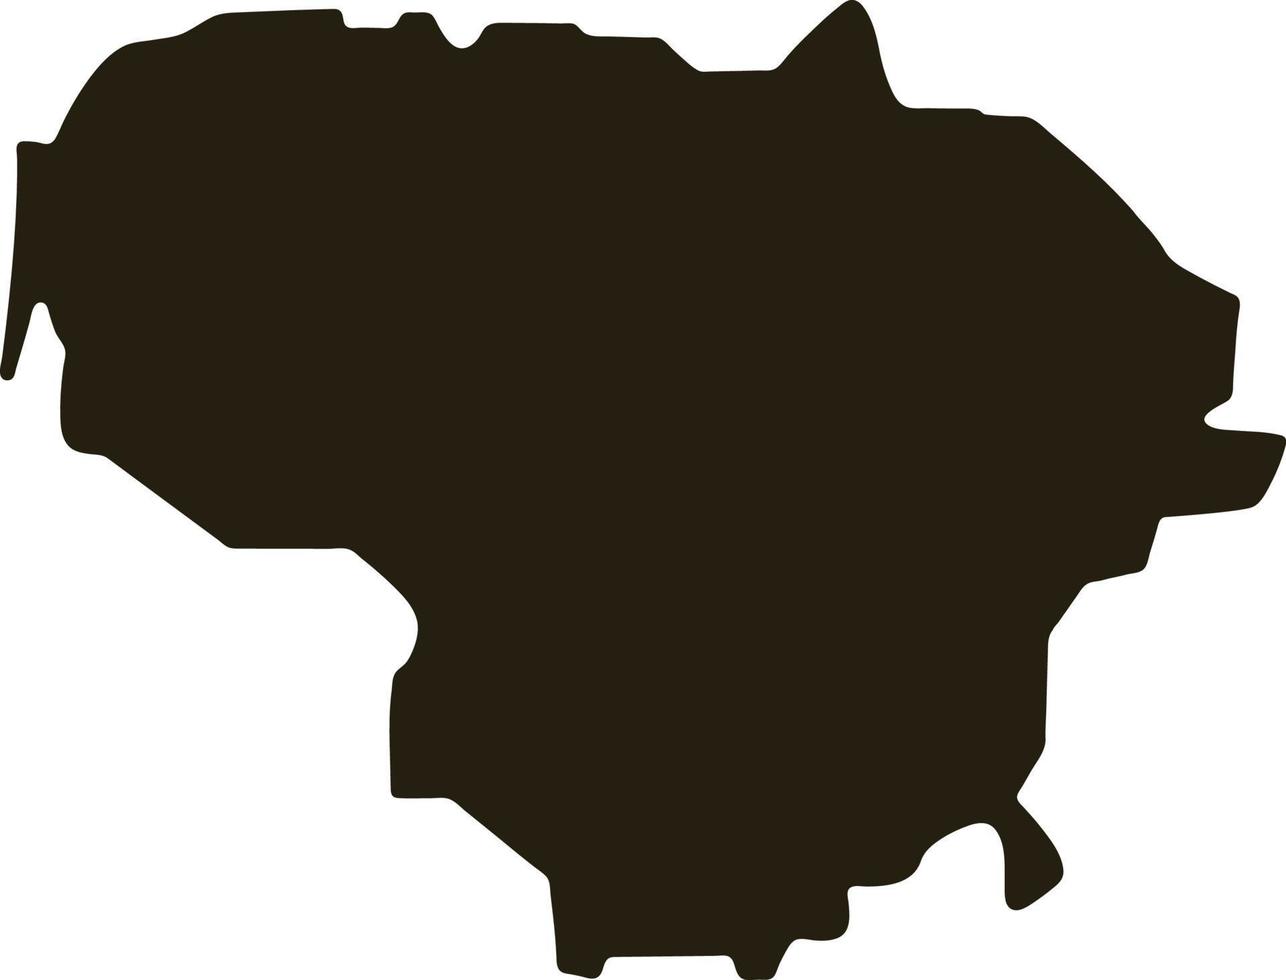 mapa da Lituânia. ilustração vetorial de mapa preto sólido vetor